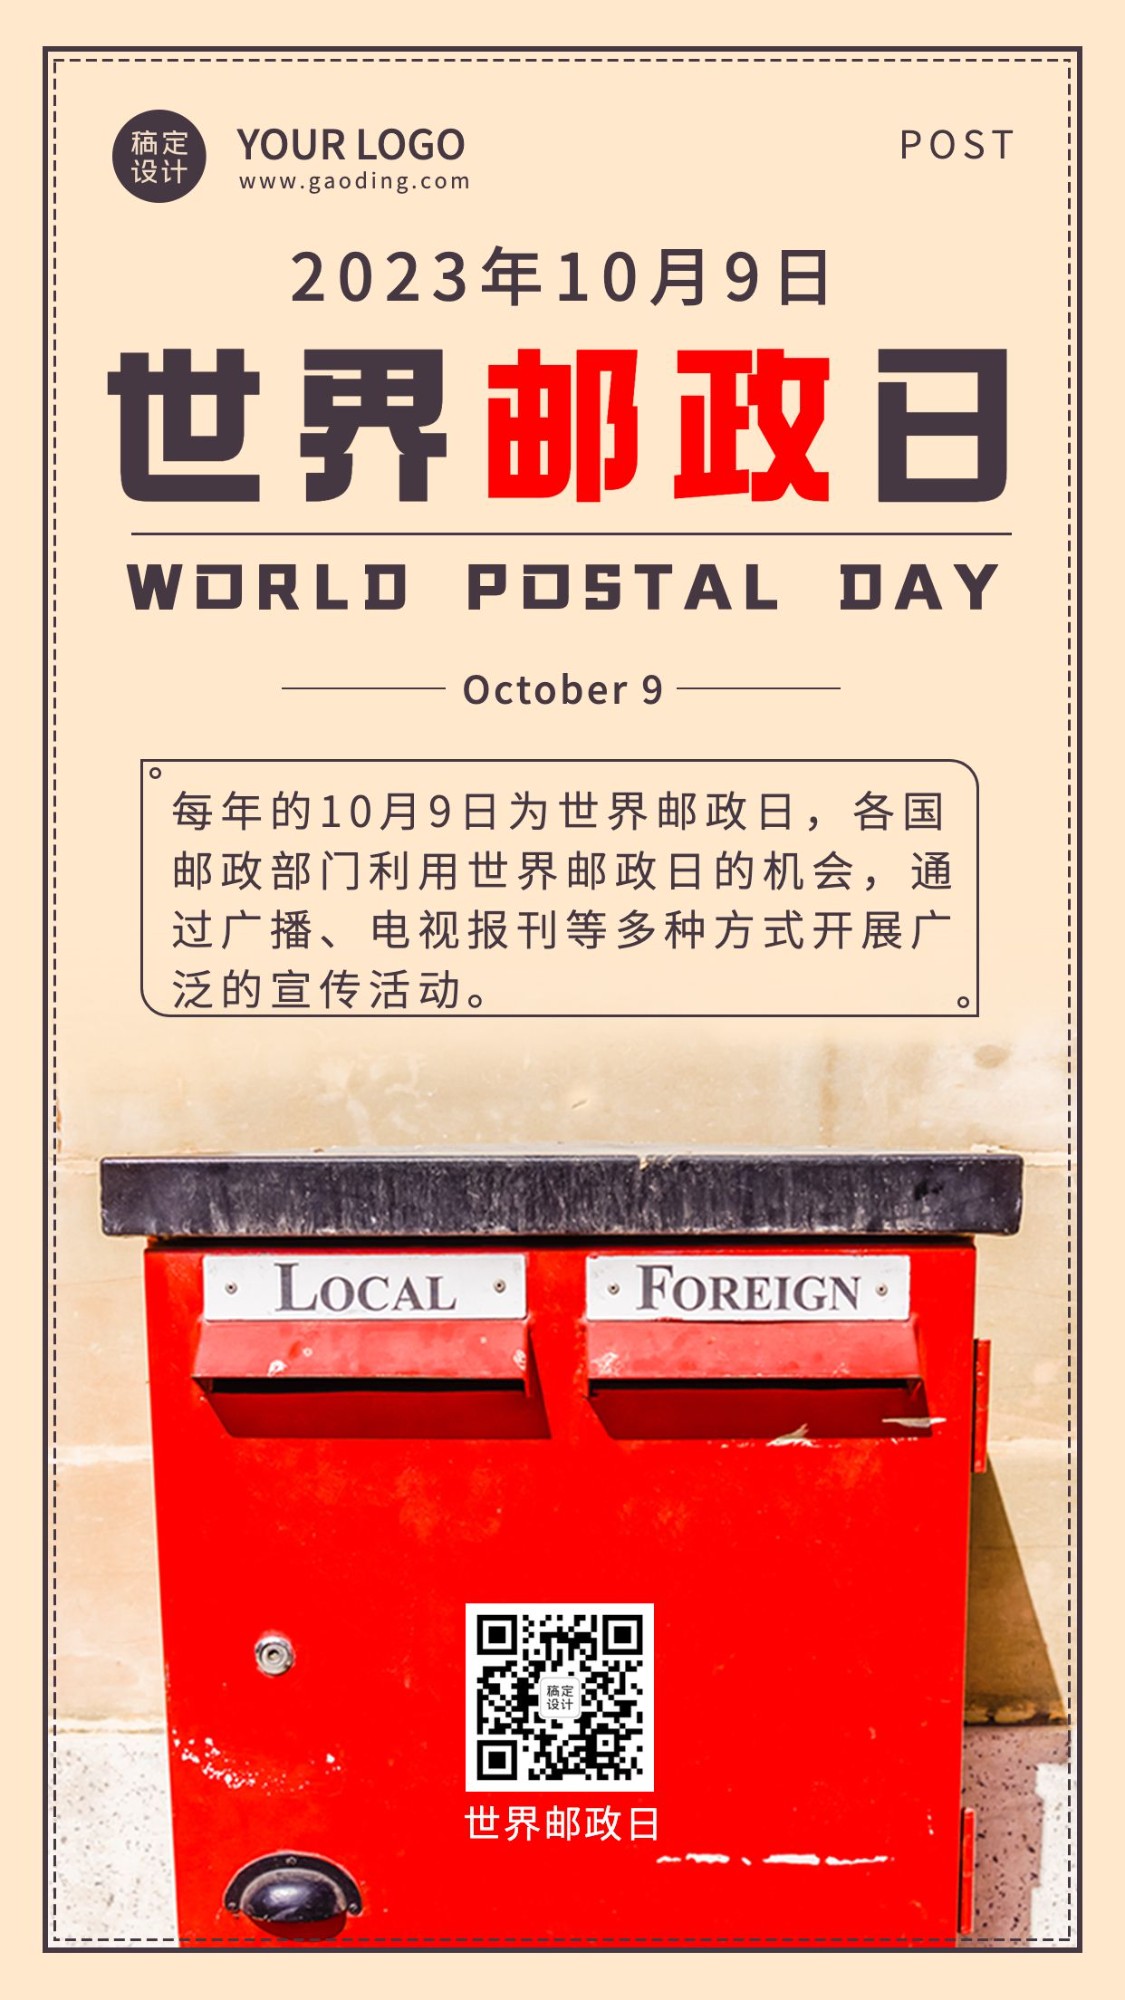 世界邮政日由来科普实景海报预览效果